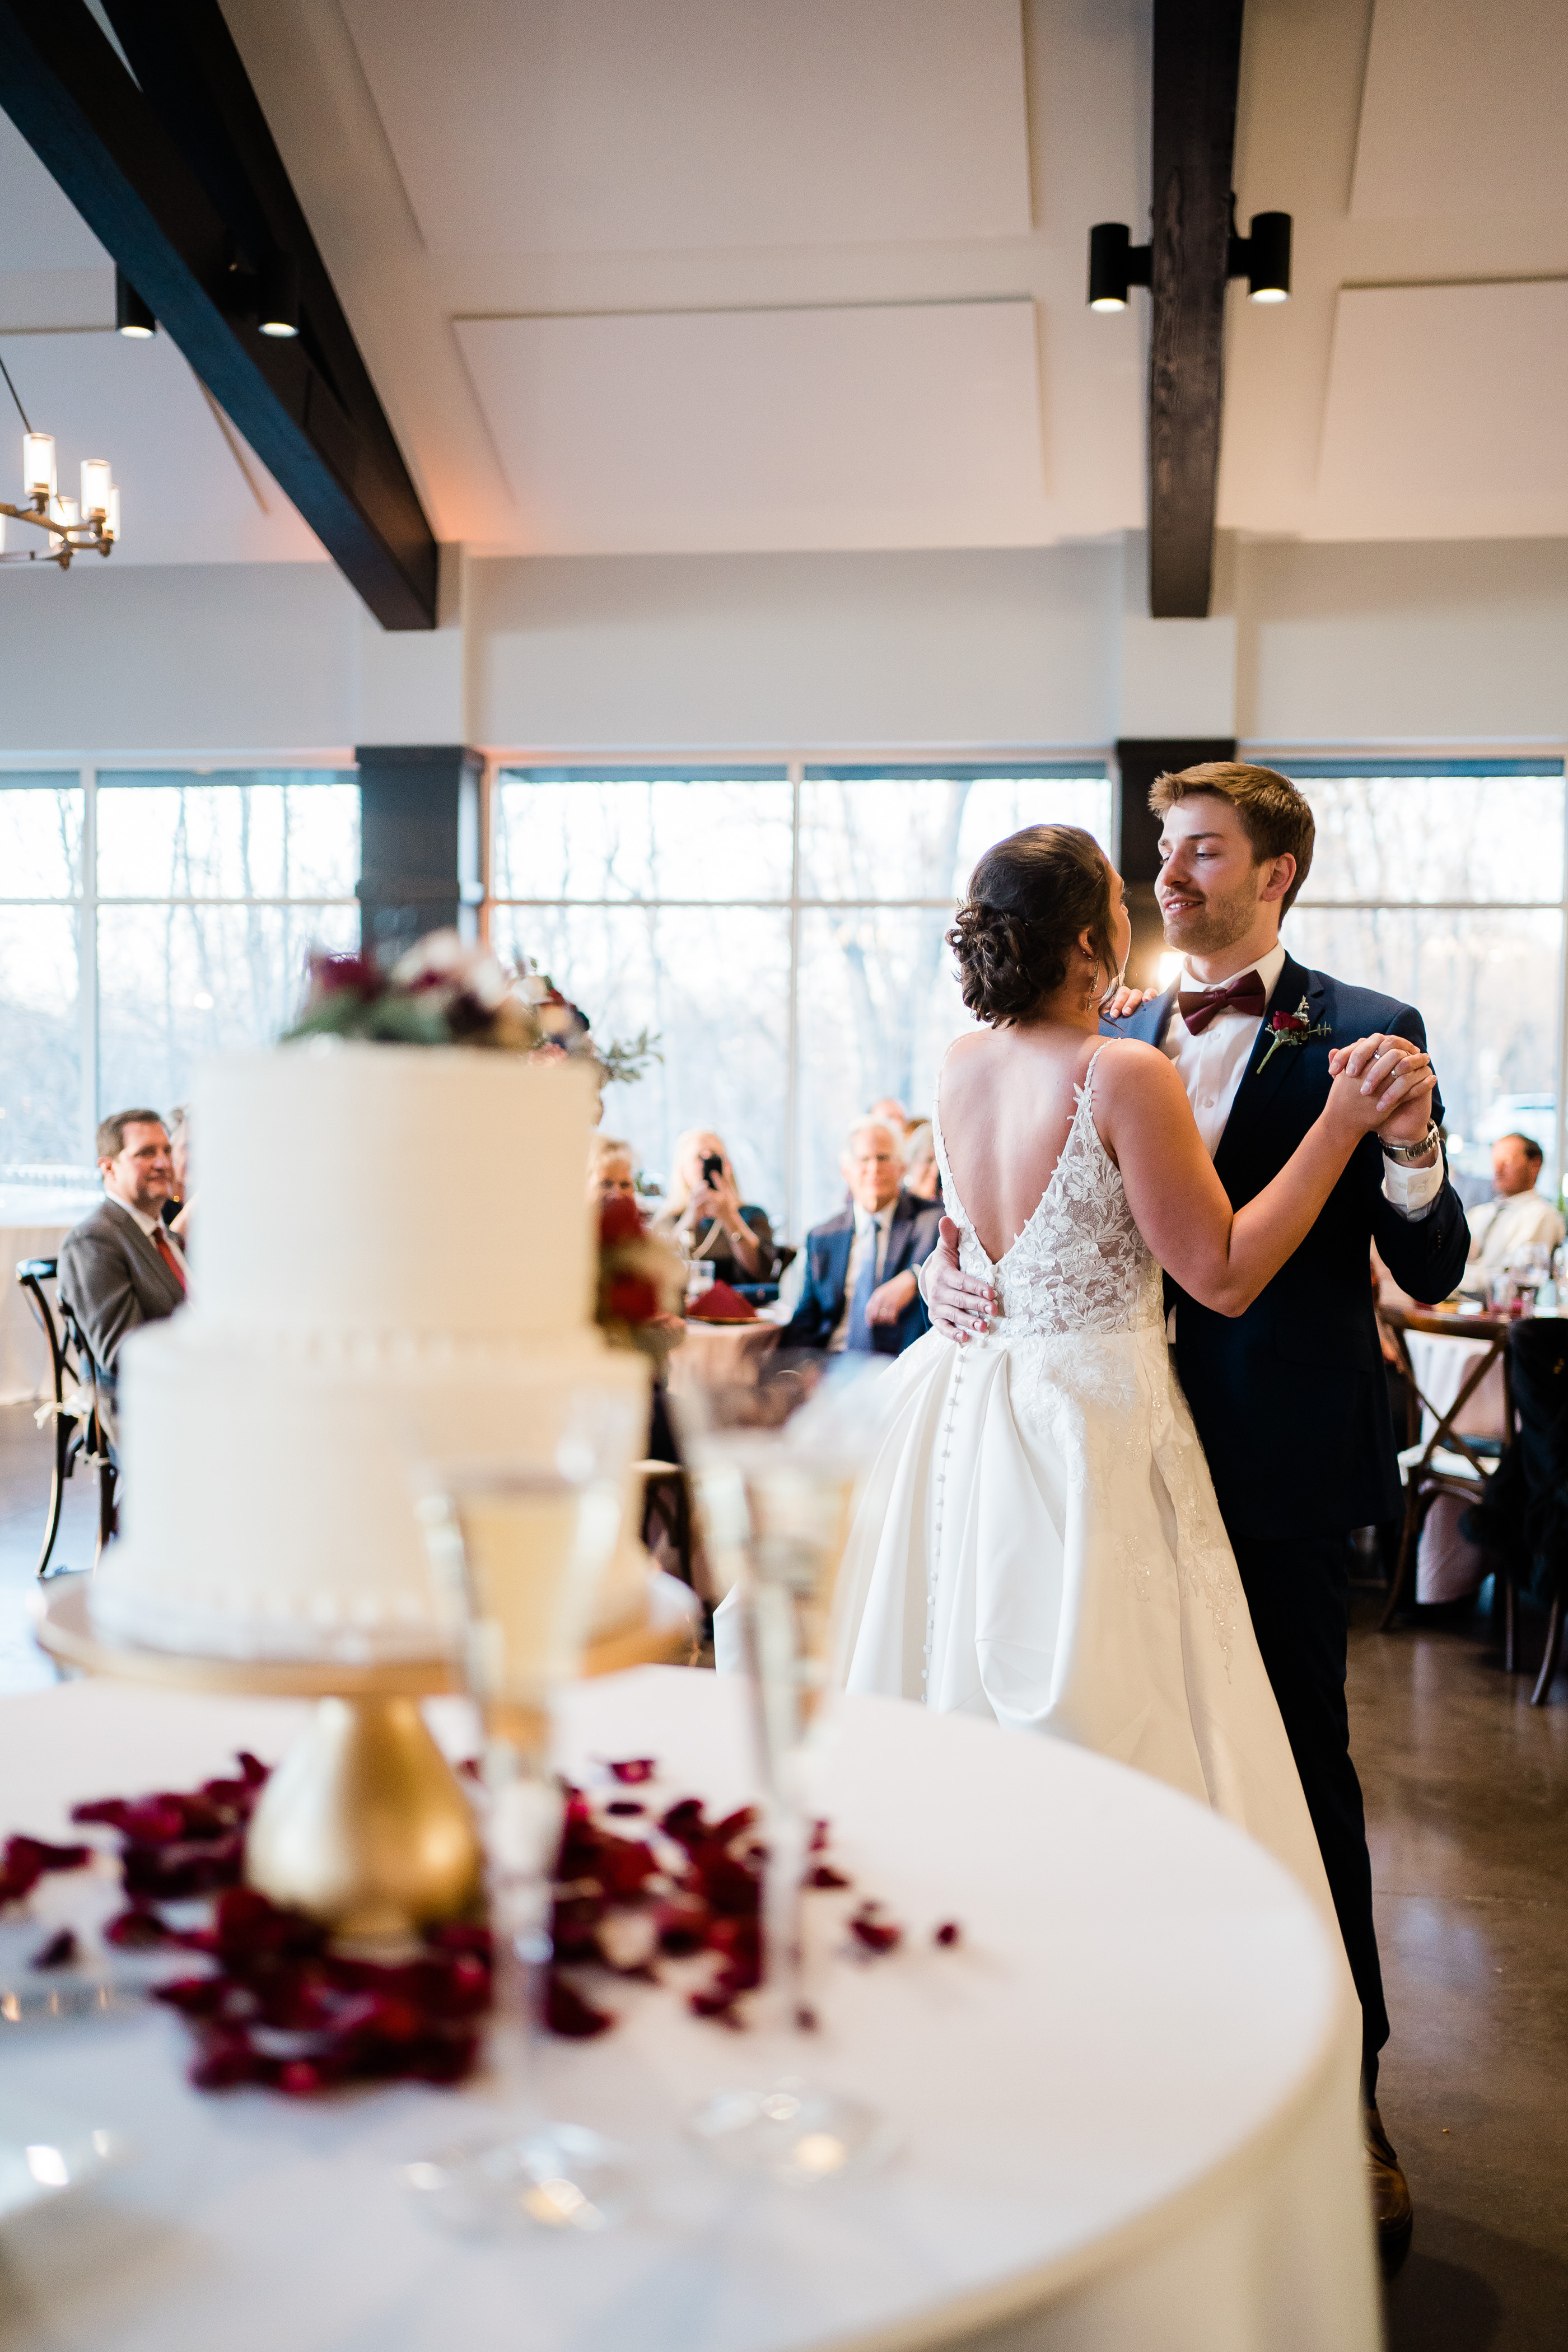 Fort Wayne wedding photographer capture bride and groom dancing